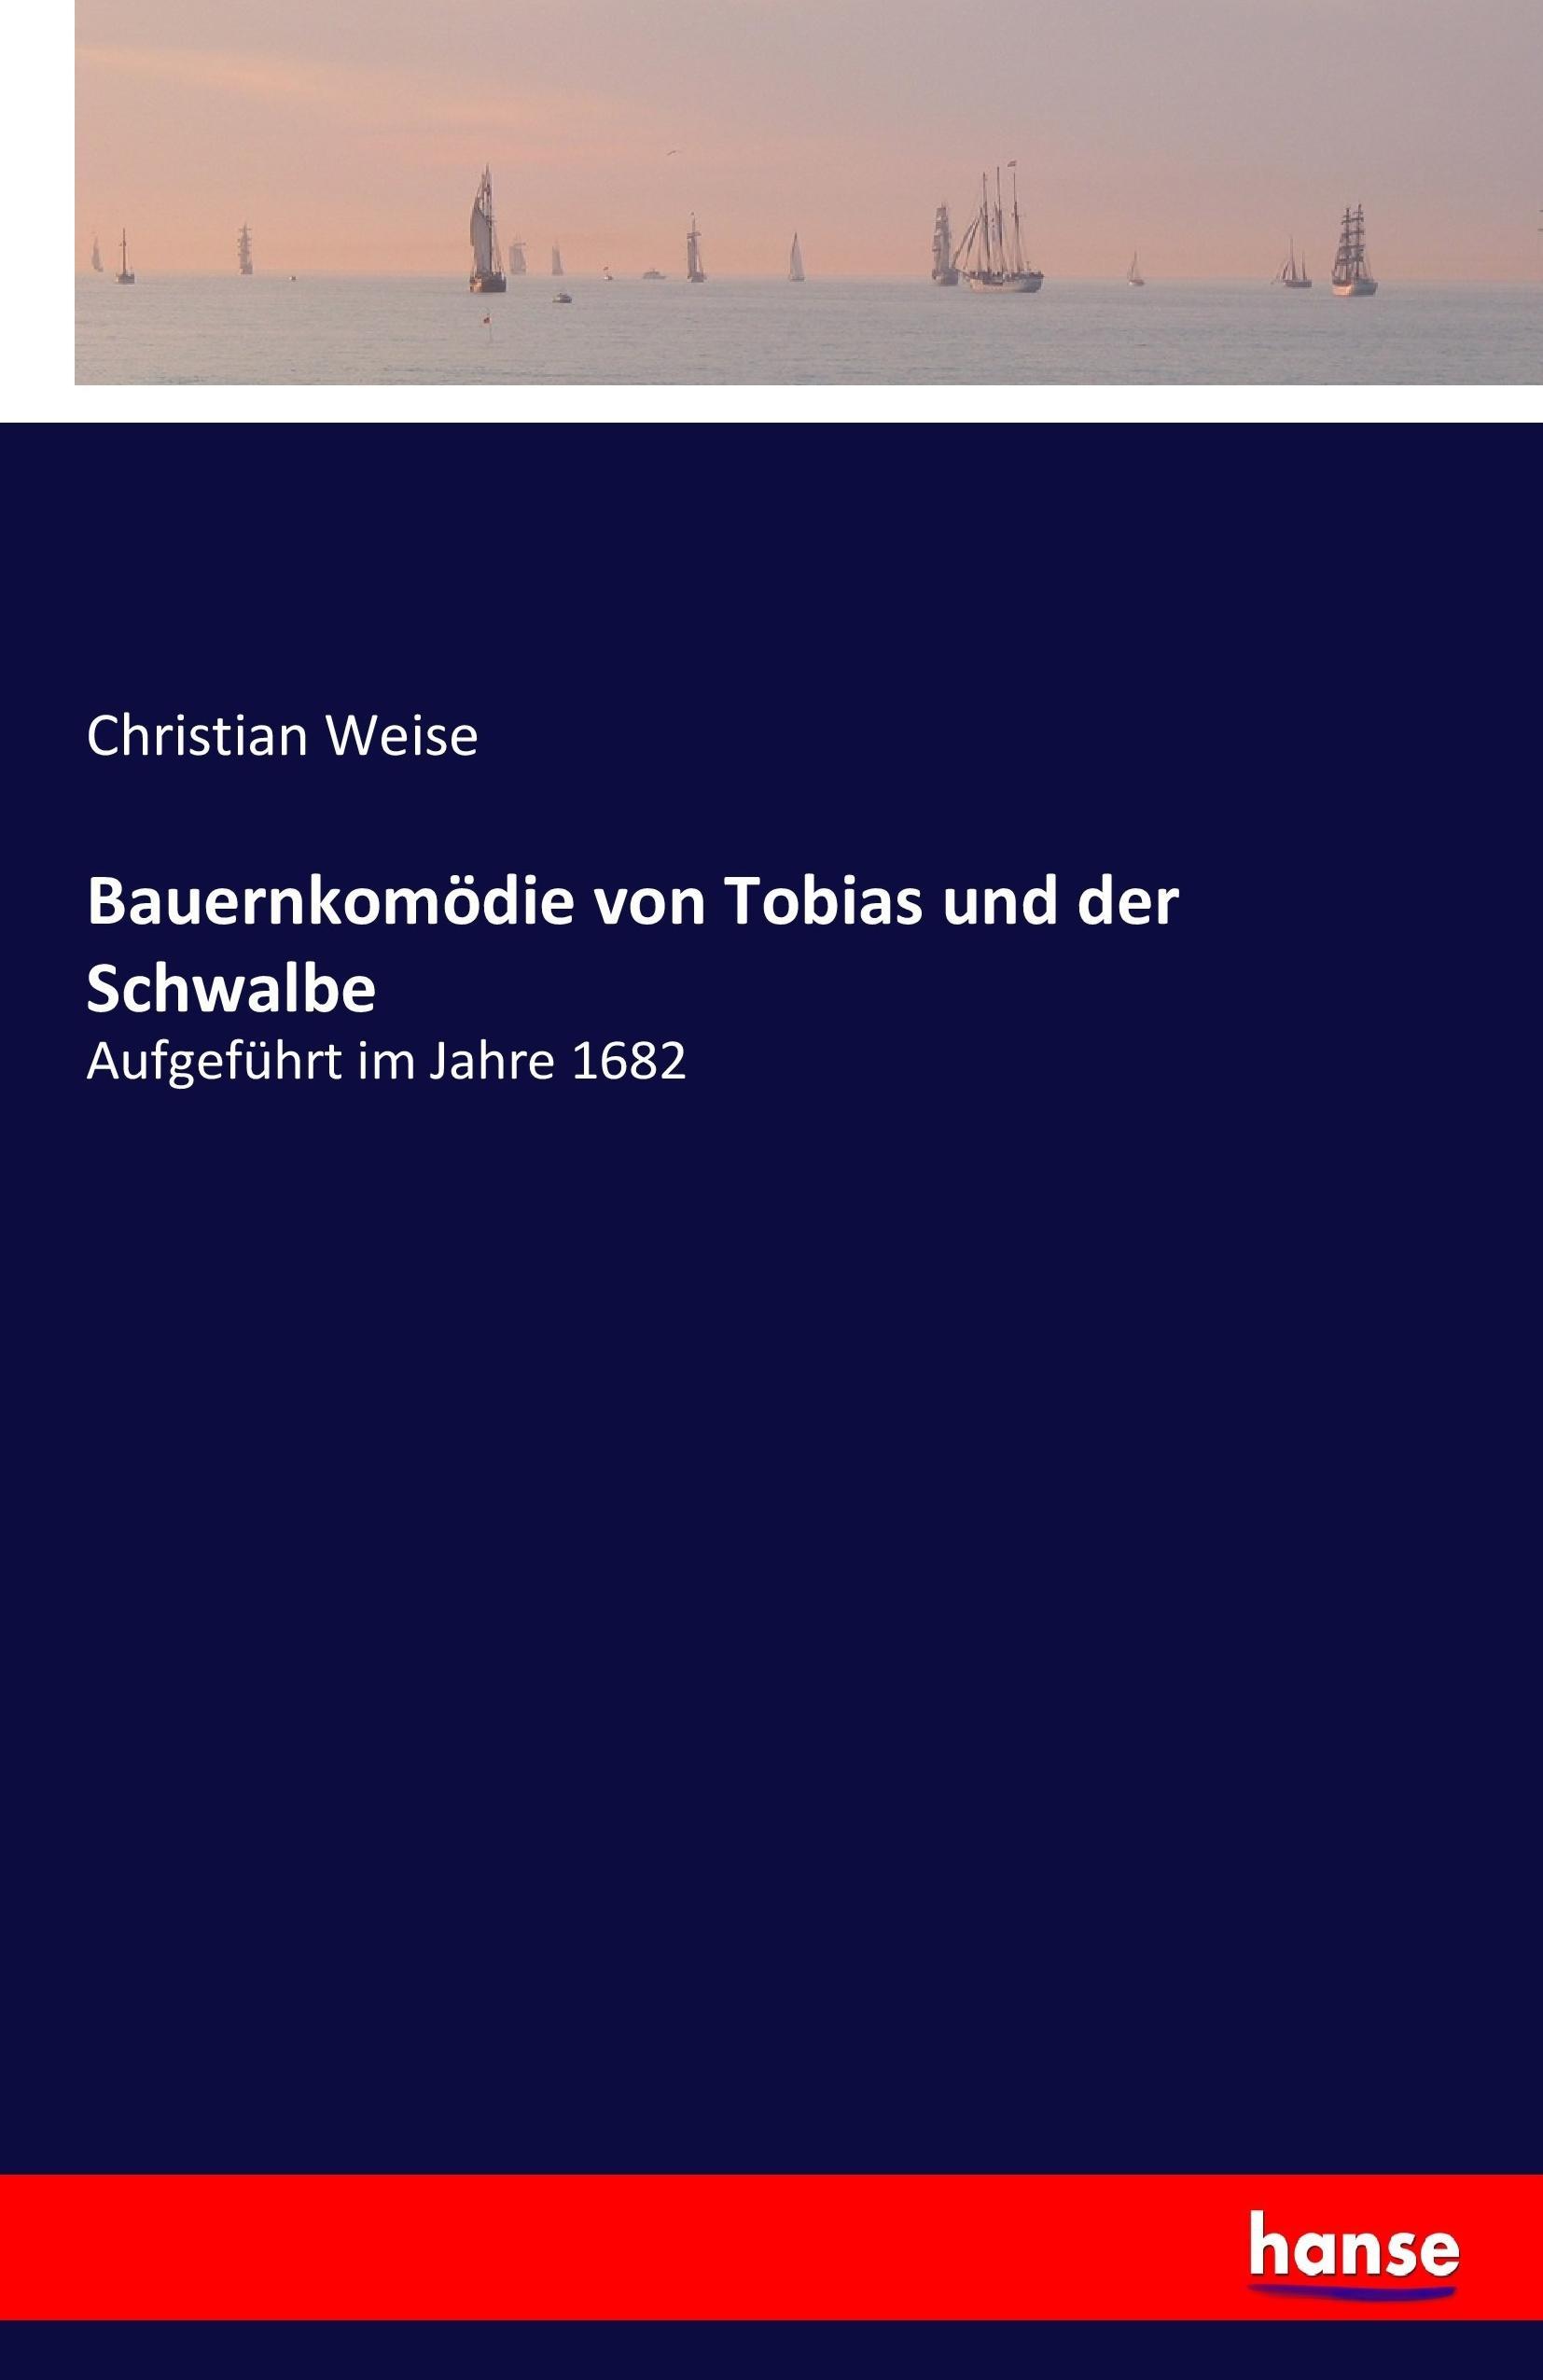 Bauernkomödie von Tobias und der Schwalbe / Aufgeführt im Jahre 1682 / Christian Weise / Taschenbuch / Paperback / 124 S. / Deutsch / 2017 / hansebooks / EAN 9783743646346 - Weise, Christian